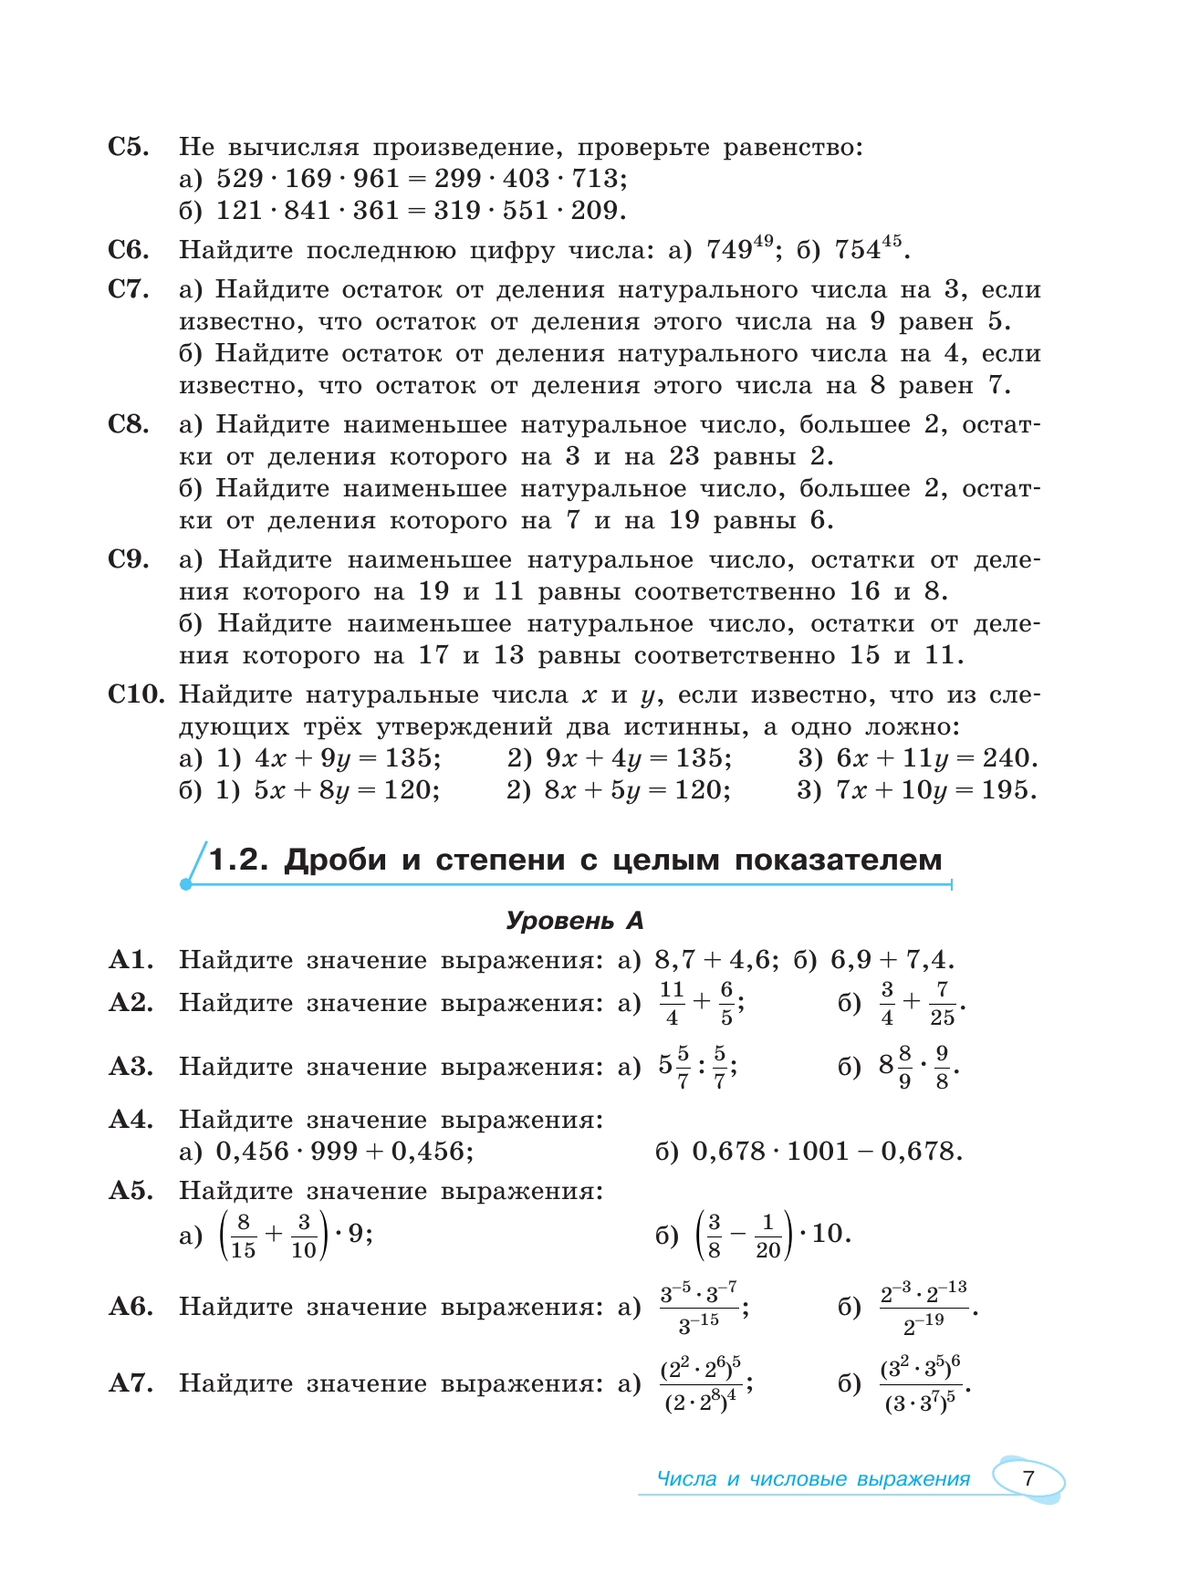 Алгебра и начала математического анализа. Универсальный многоуровневый сборник задач. 10-11 классы 10